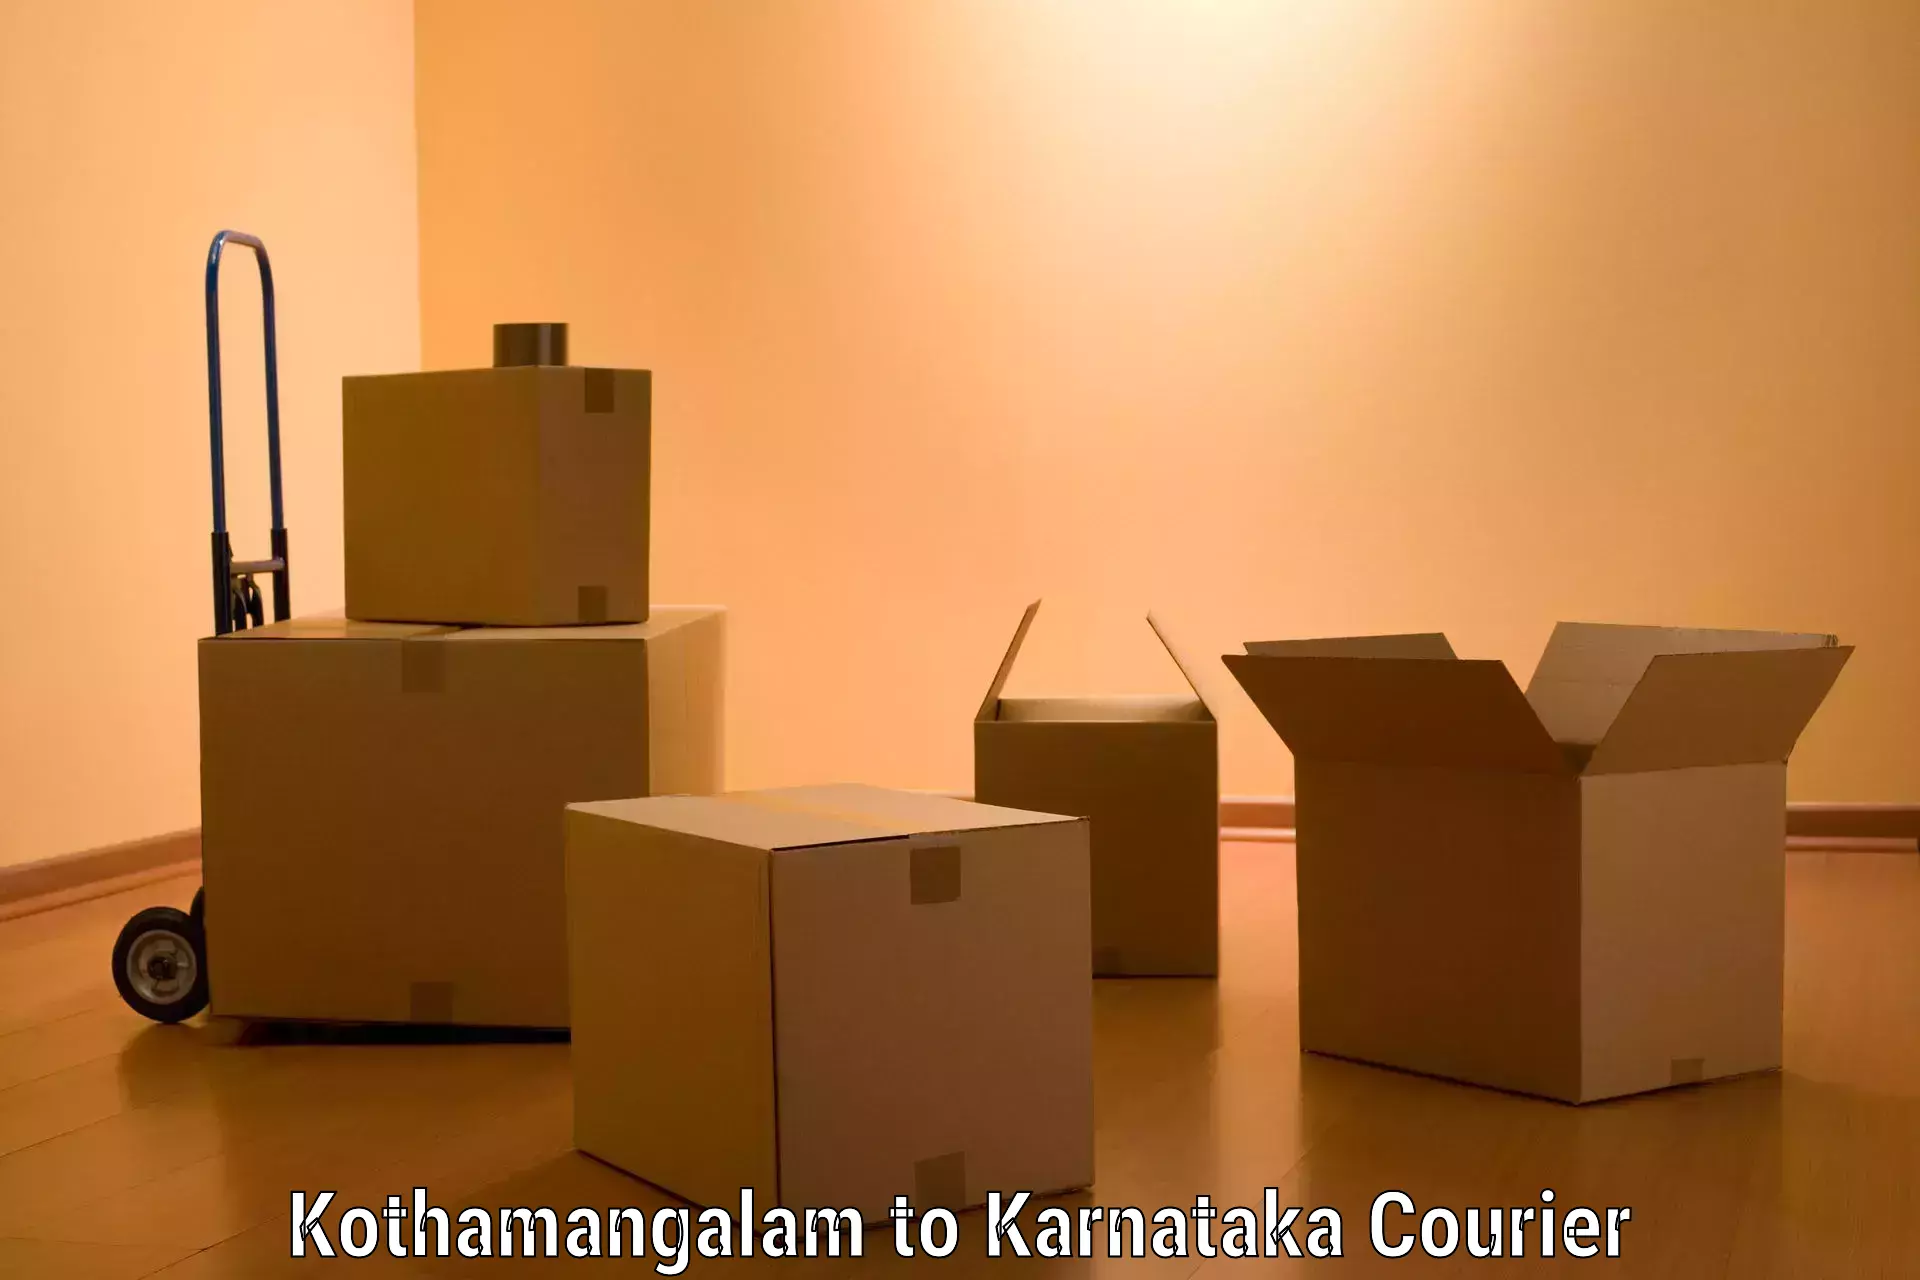 Moving and packing experts Kothamangalam to Ramanathapura